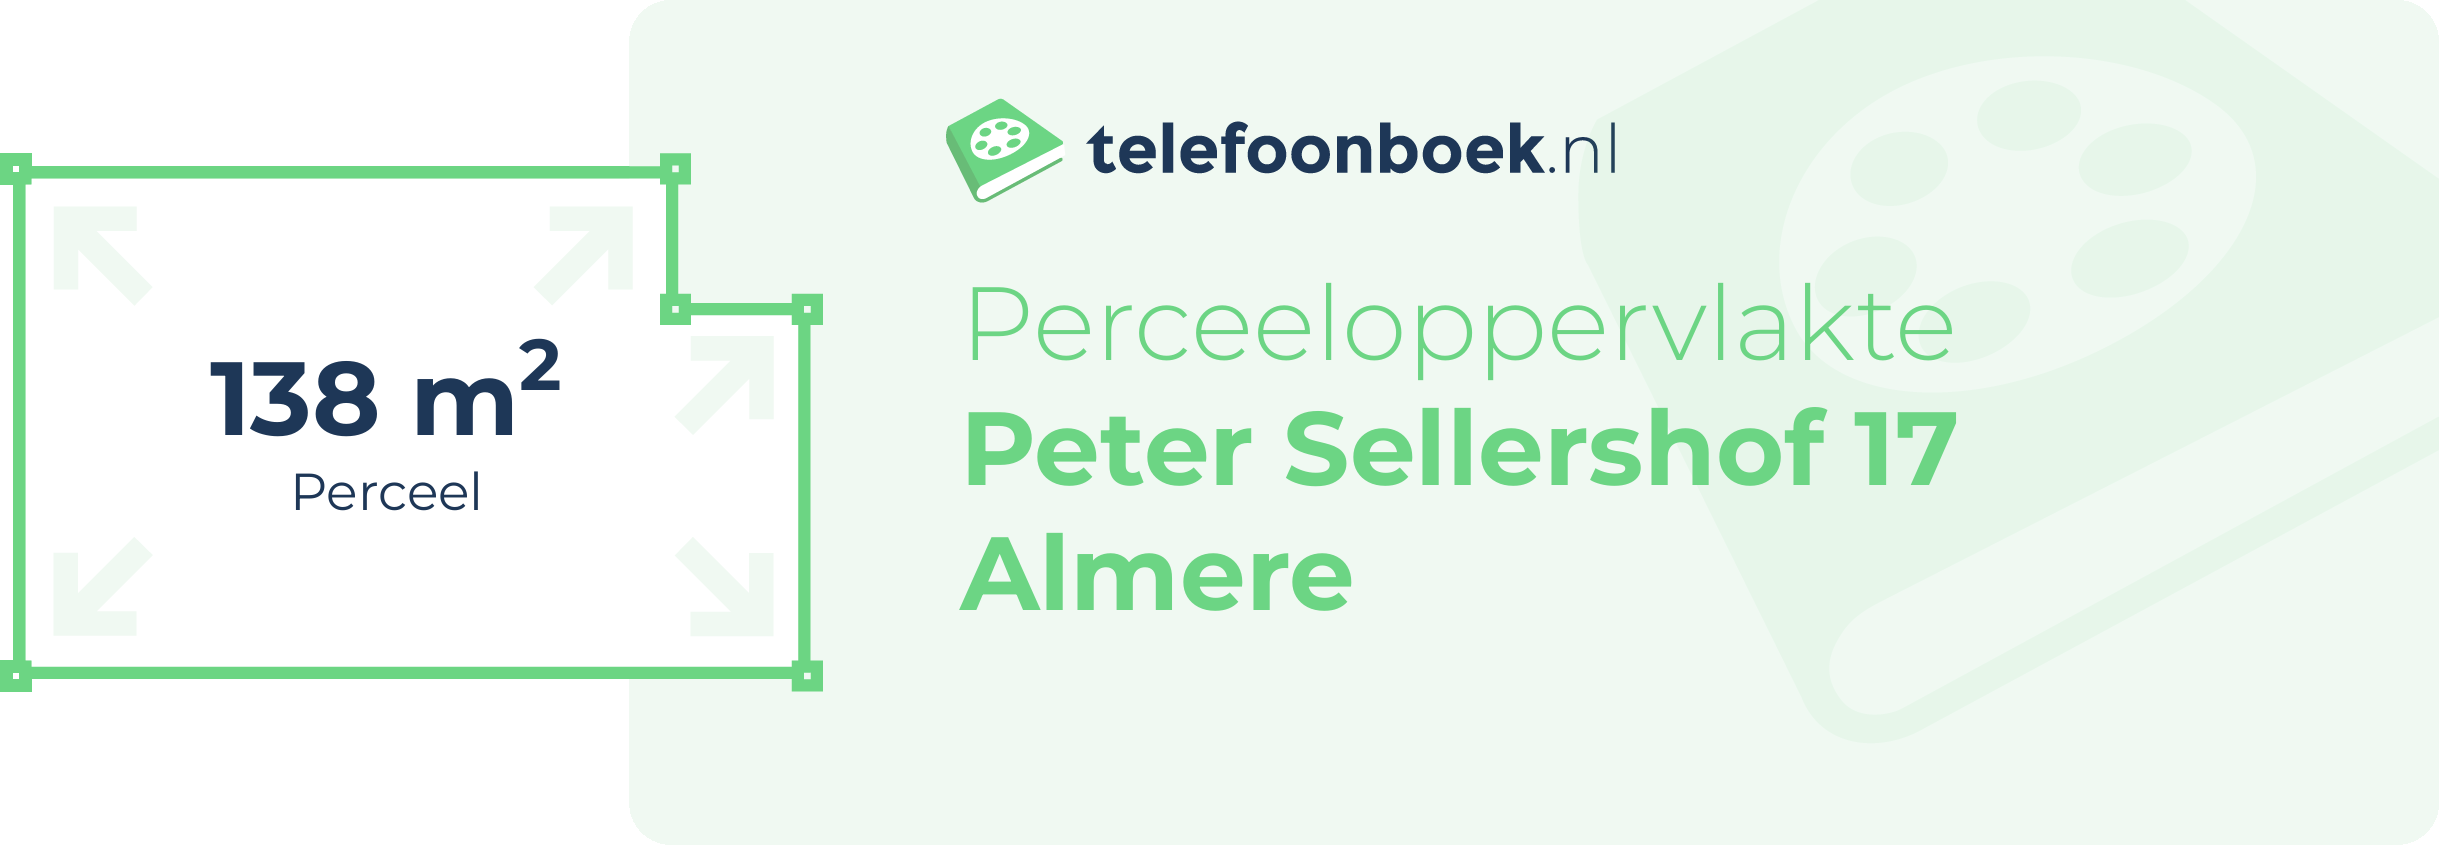 Perceeloppervlakte Peter Sellershof 17 Almere